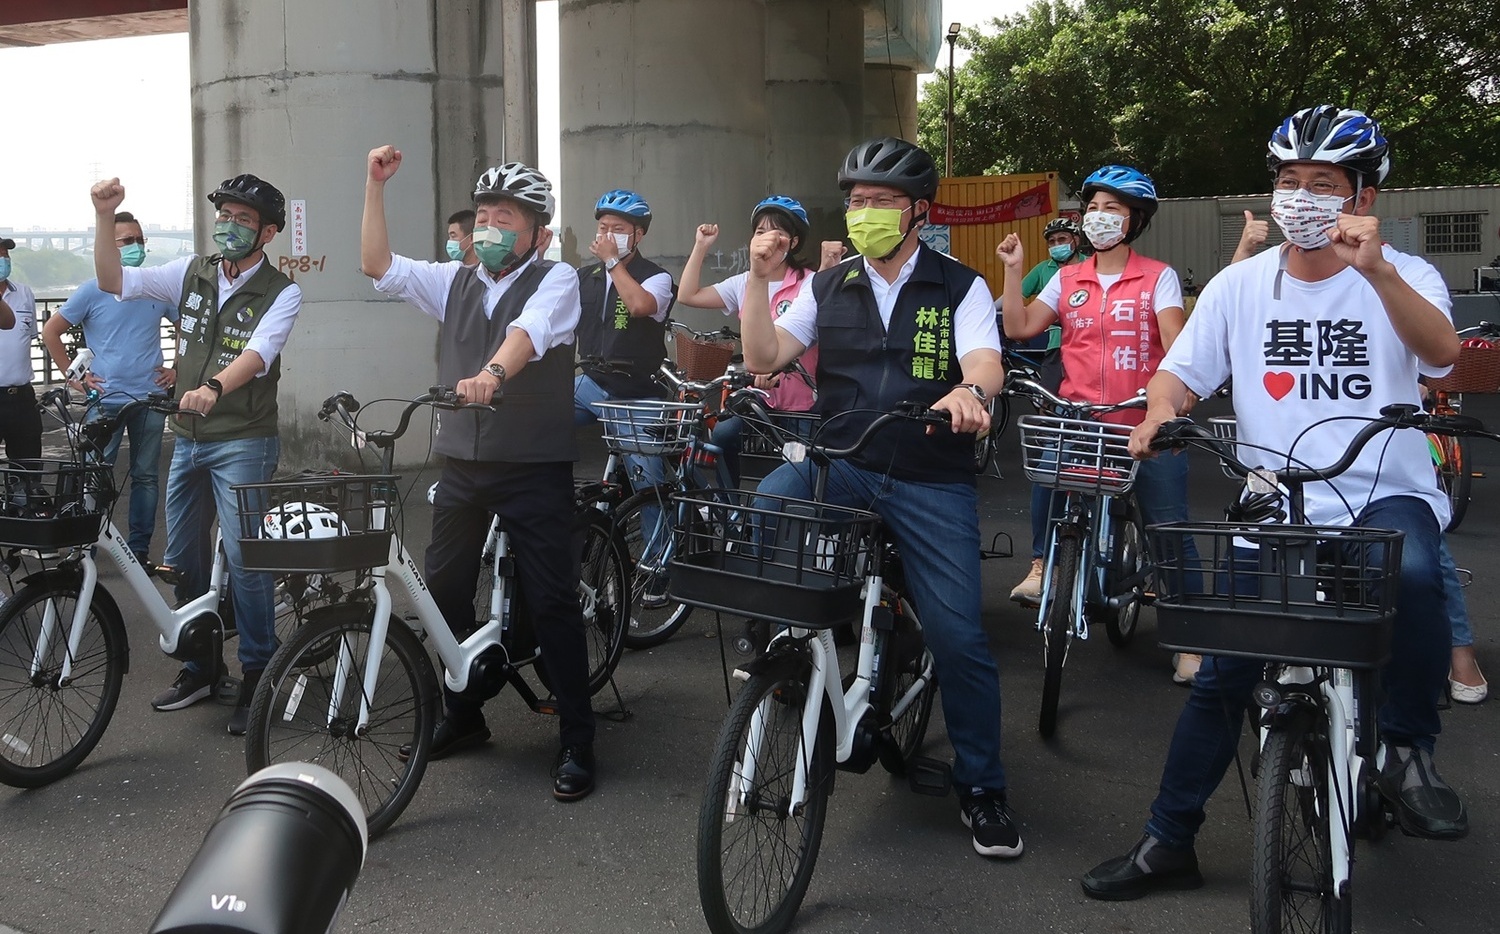 綠基北北桃候選人共齊電動腳踏車 簽署首都共同圈主張 | 政治 | New